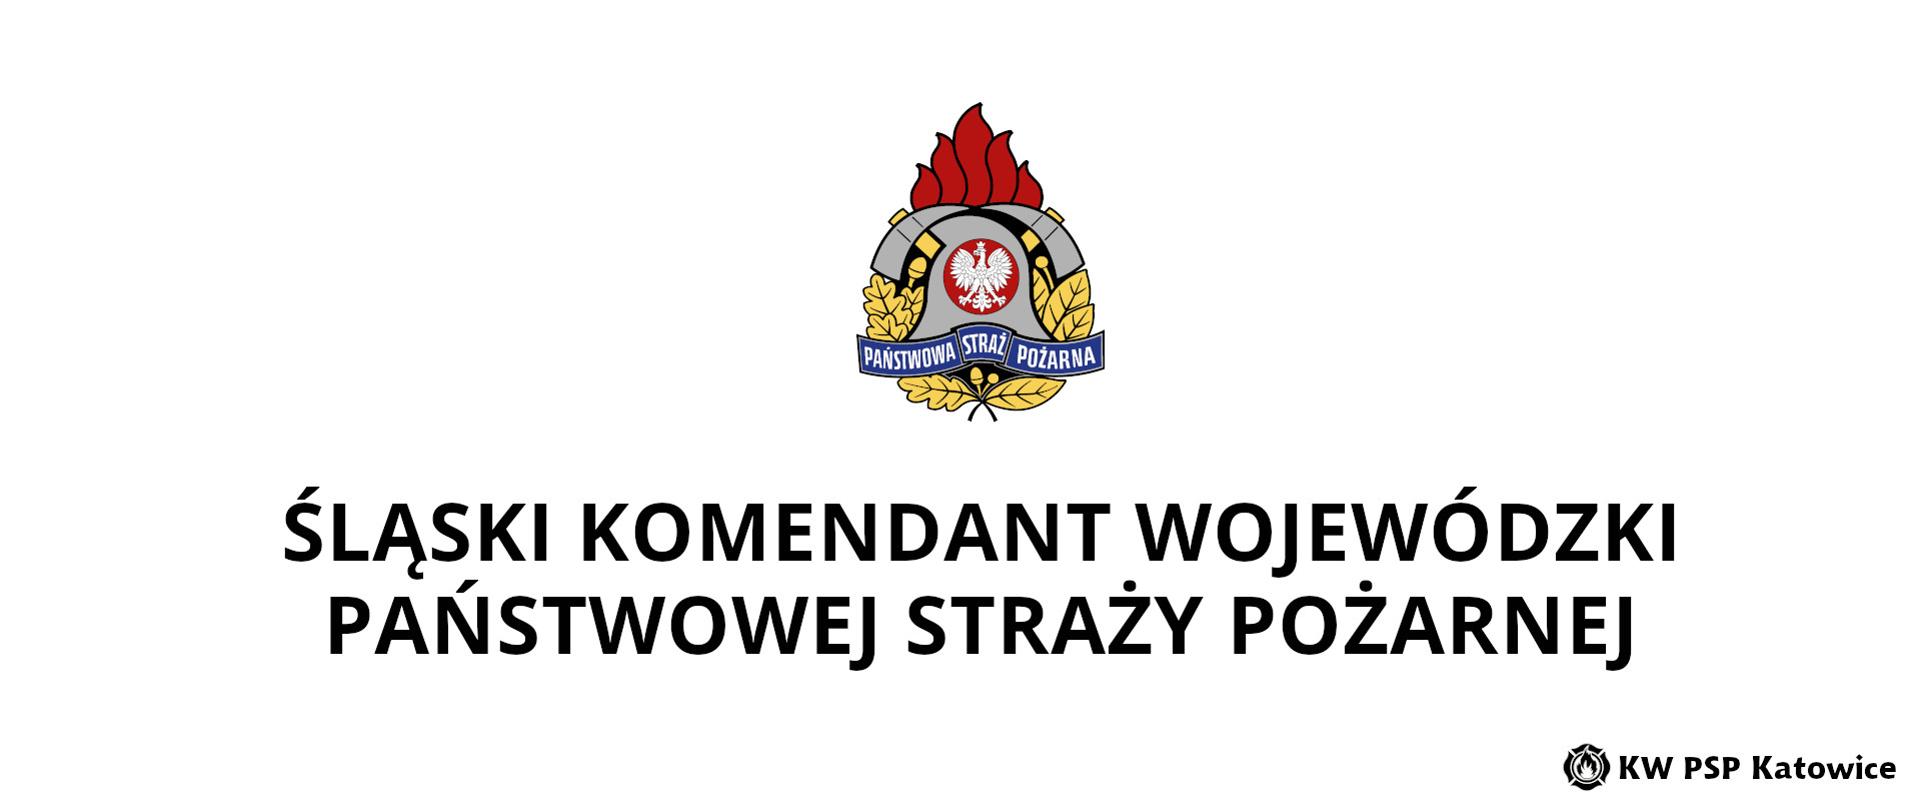 Ilustracja przedstawia na białym tle, na środku u góry kolorowy logotyp Państwowej Straży Pożarnej. Poniżej napis Śląski Komendant Państwowej Straży Pożarnej. W prawym dolnym rogu napis KW PSP Katowice